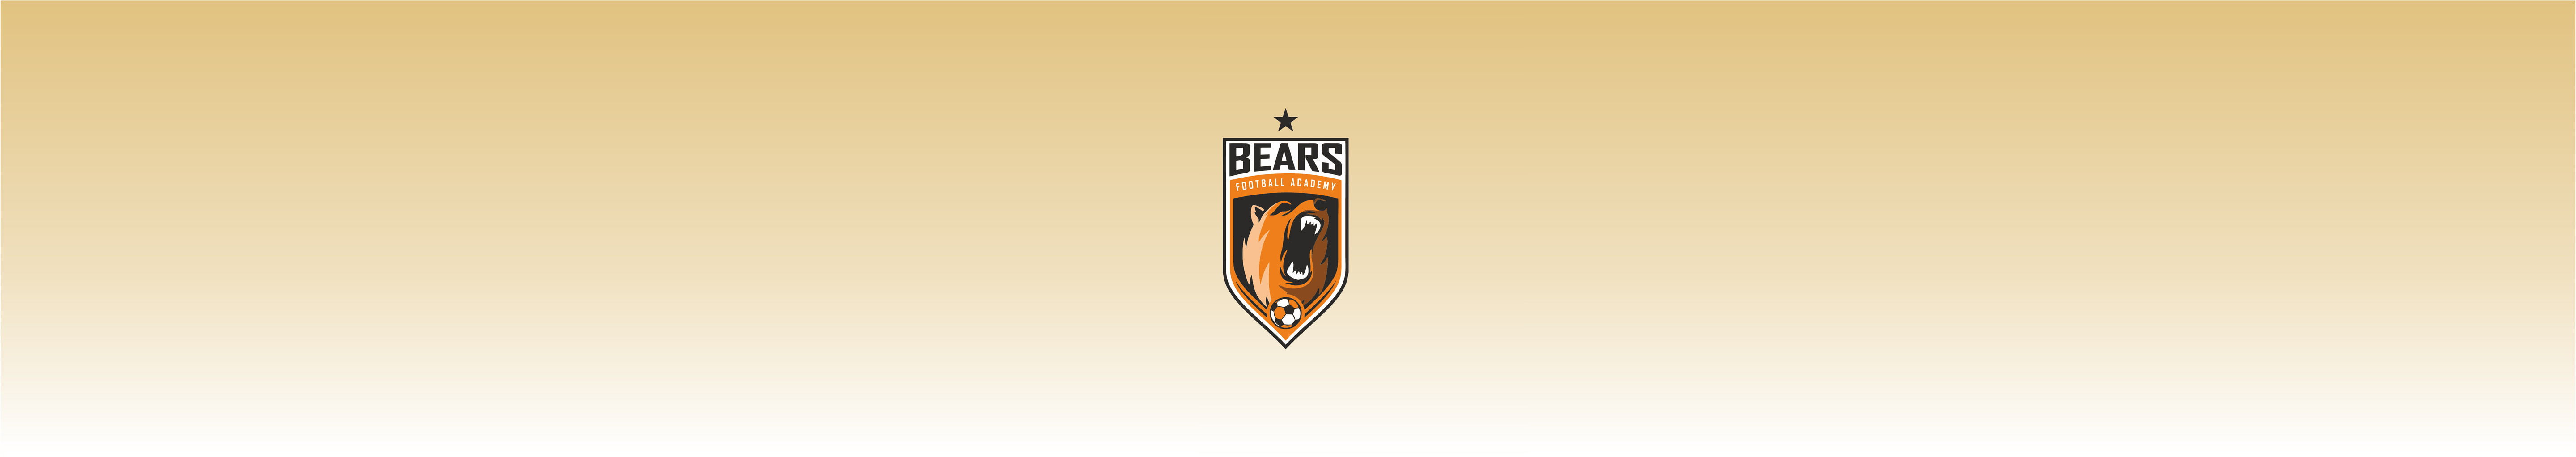 Bears Football Academy